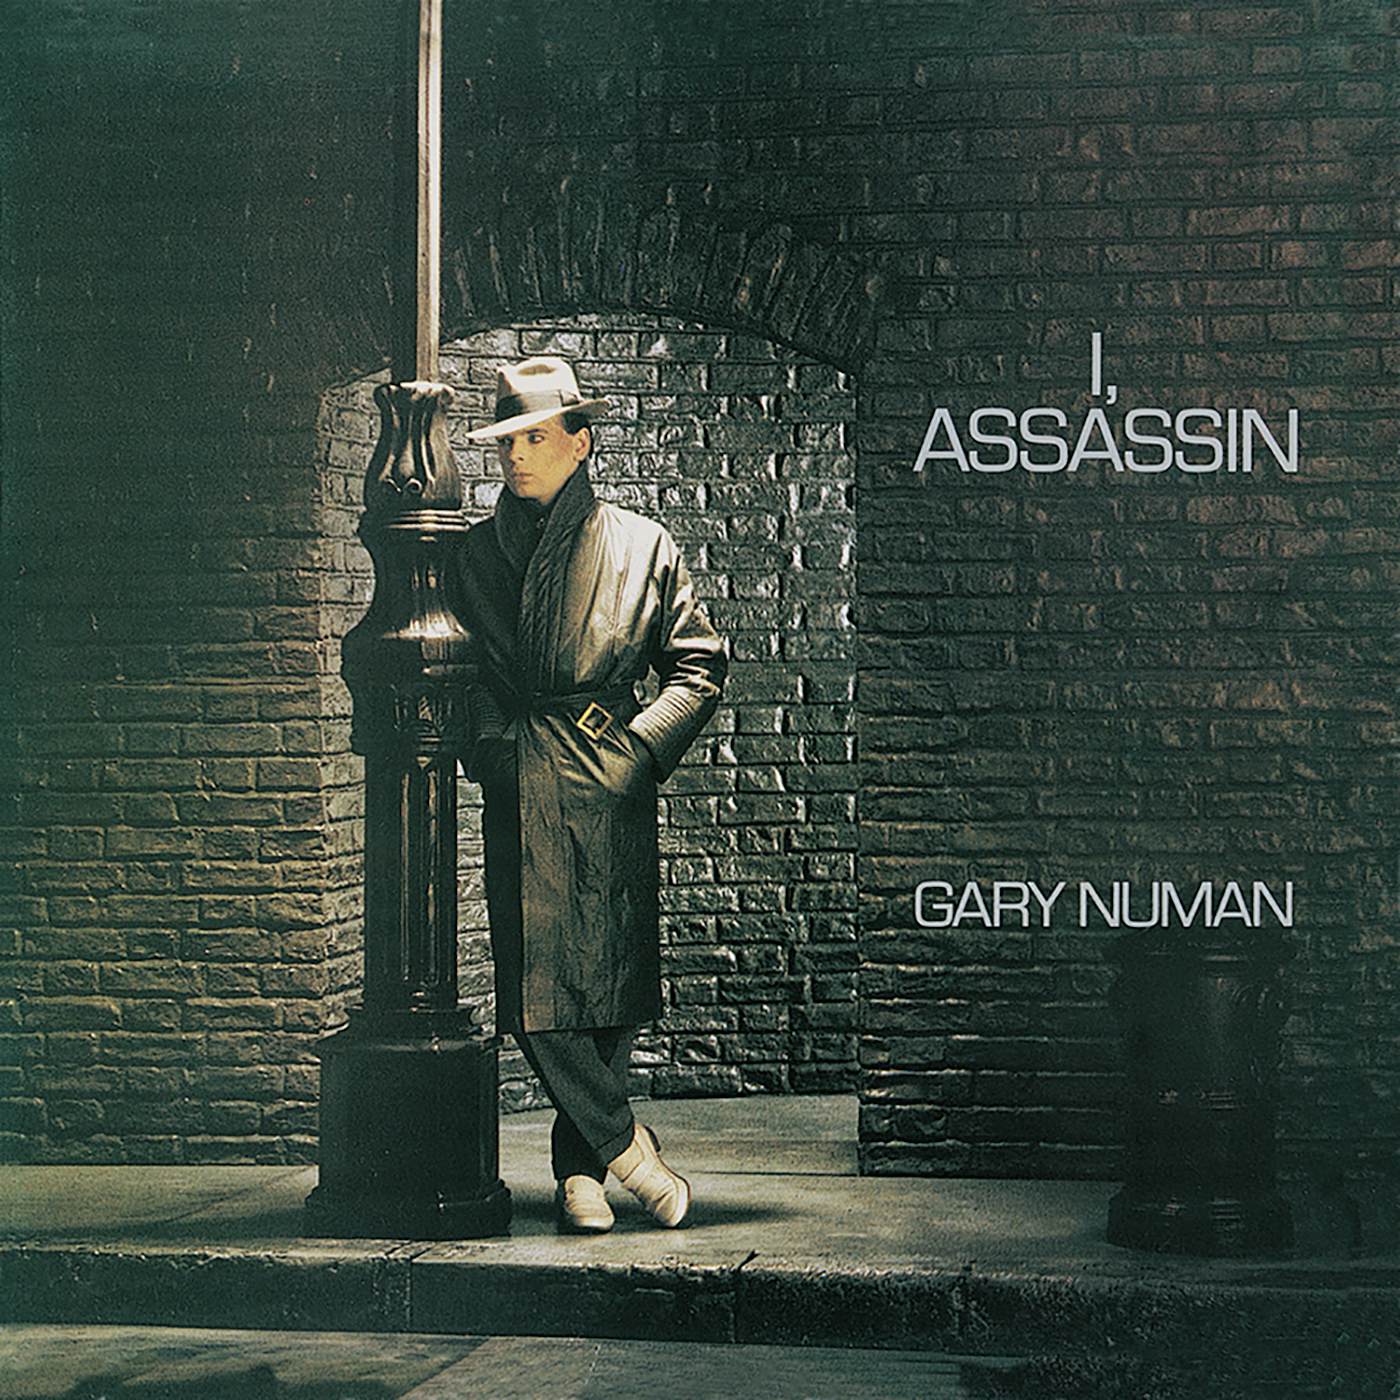 Gary Numan I ASSASSIN Vinyl Record